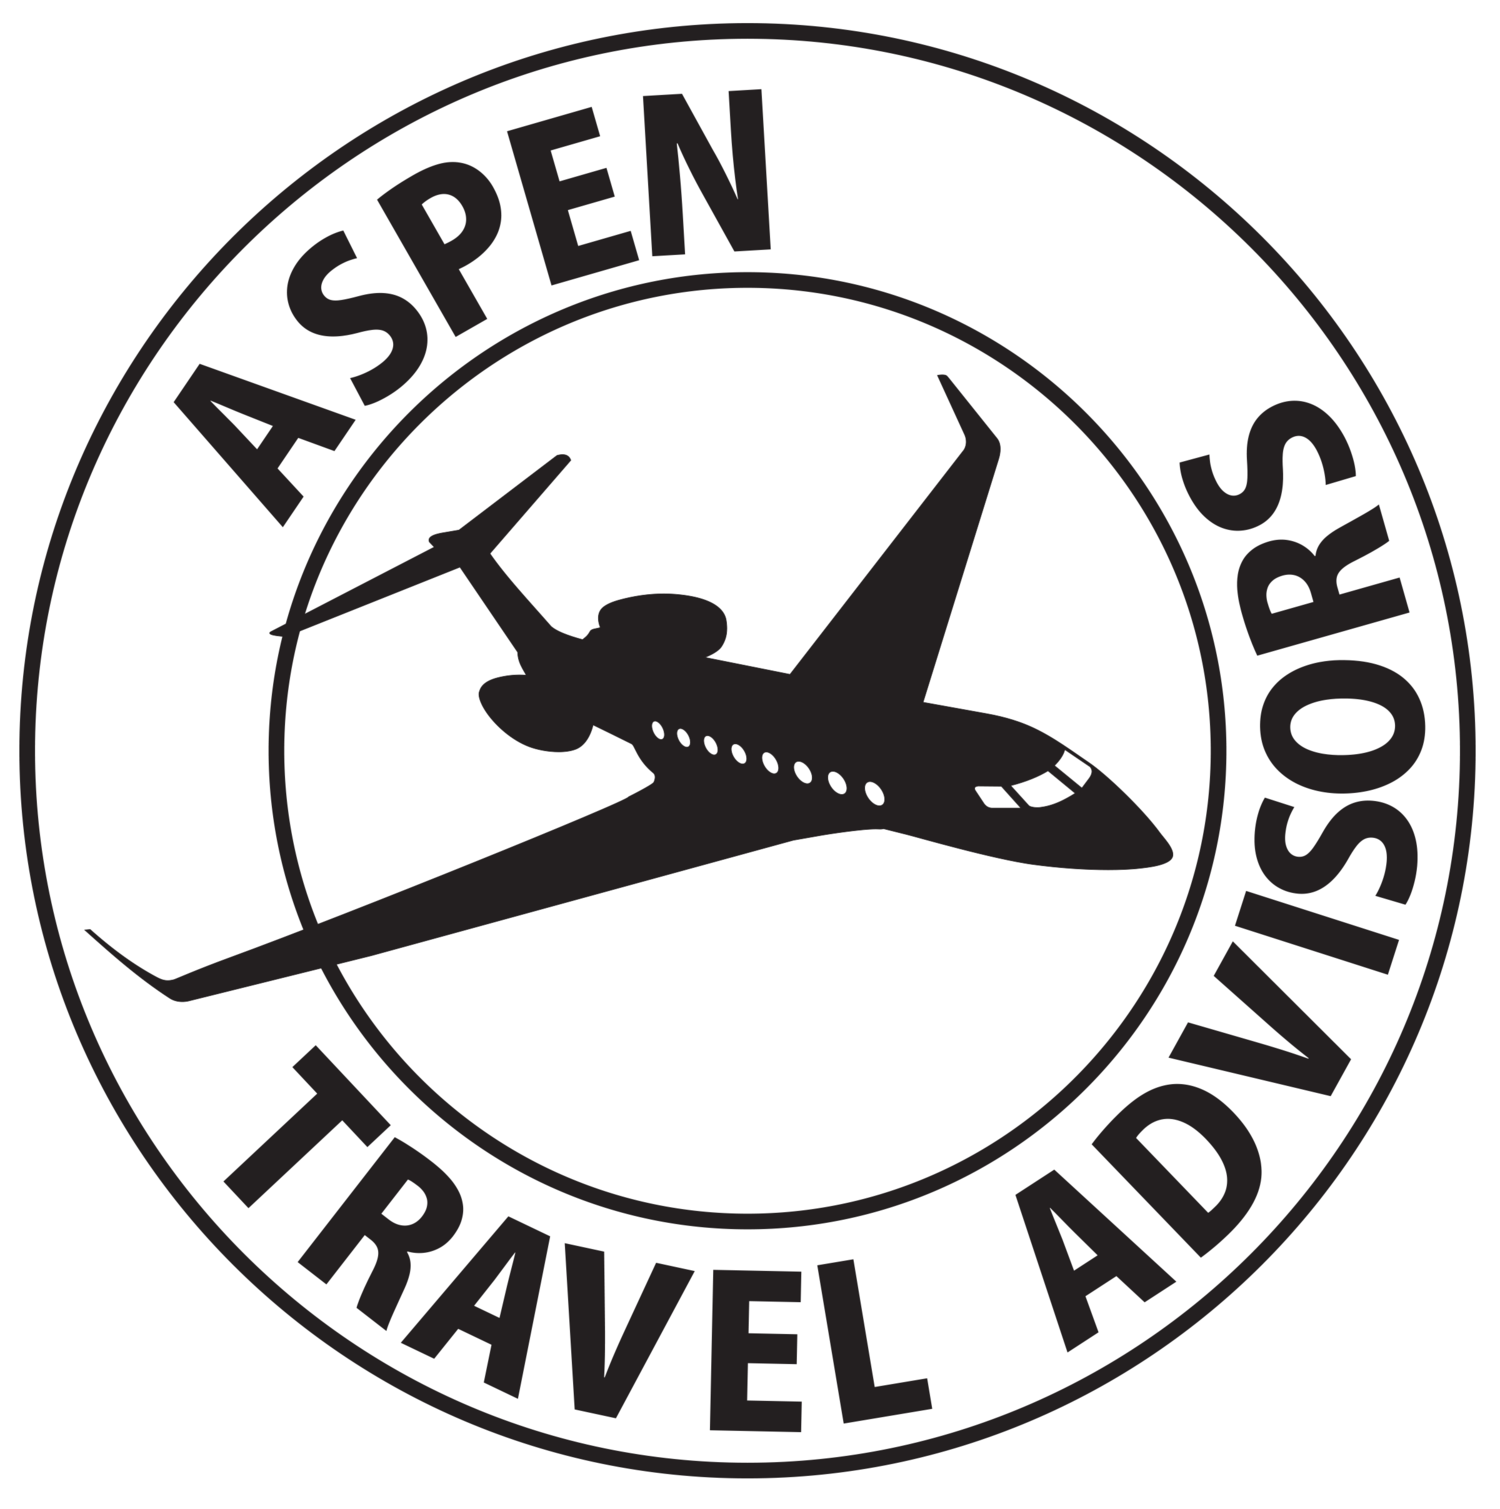 Aspen Travel Advisors